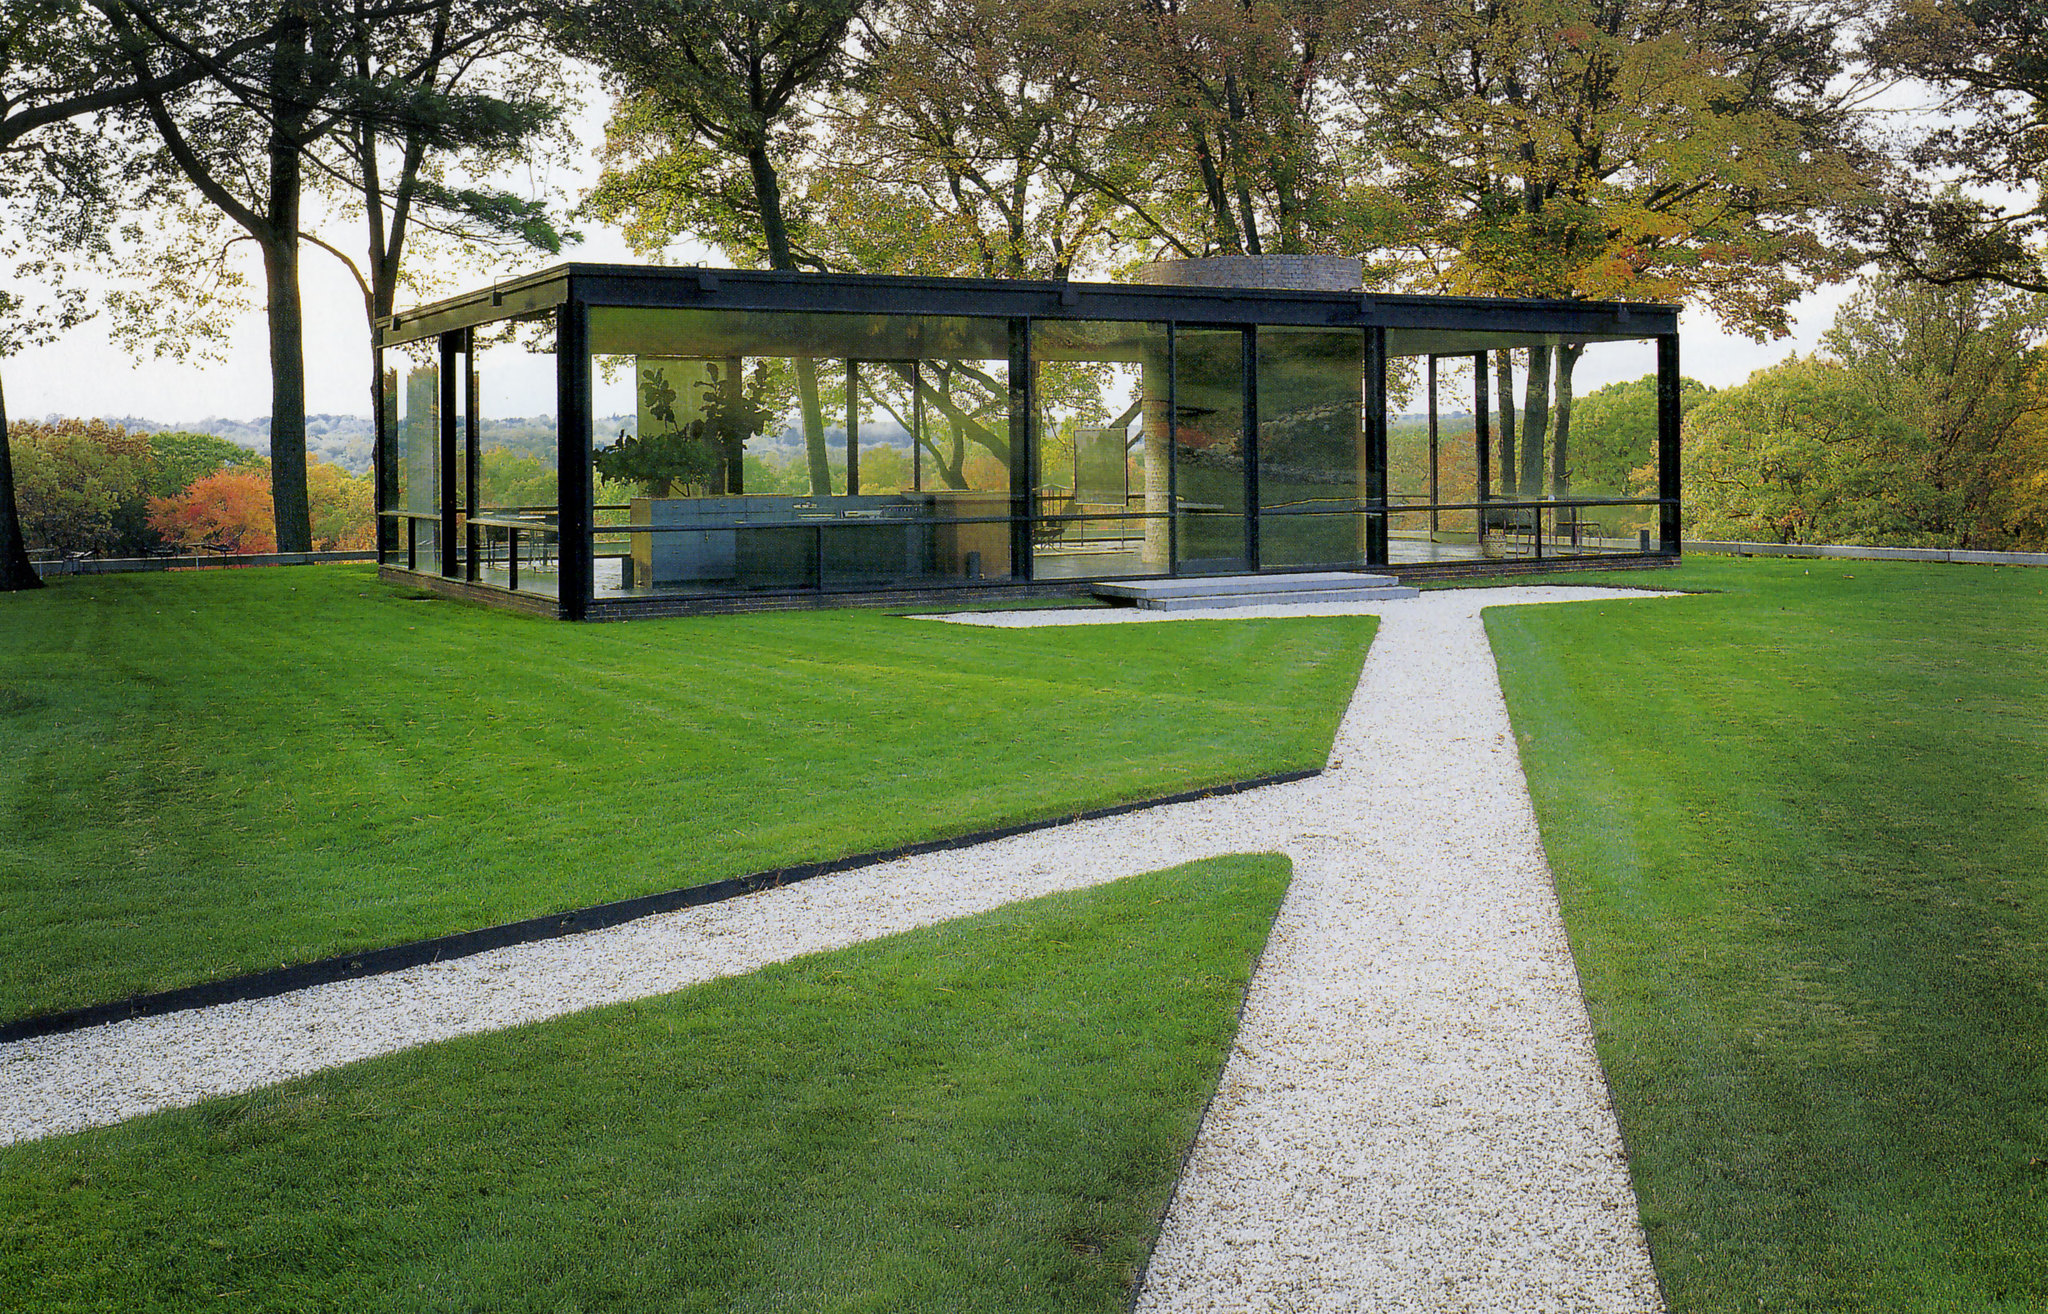 Glass House, de Philip Johnson, é uma das mais importantes obras da arquitetura moderna americana